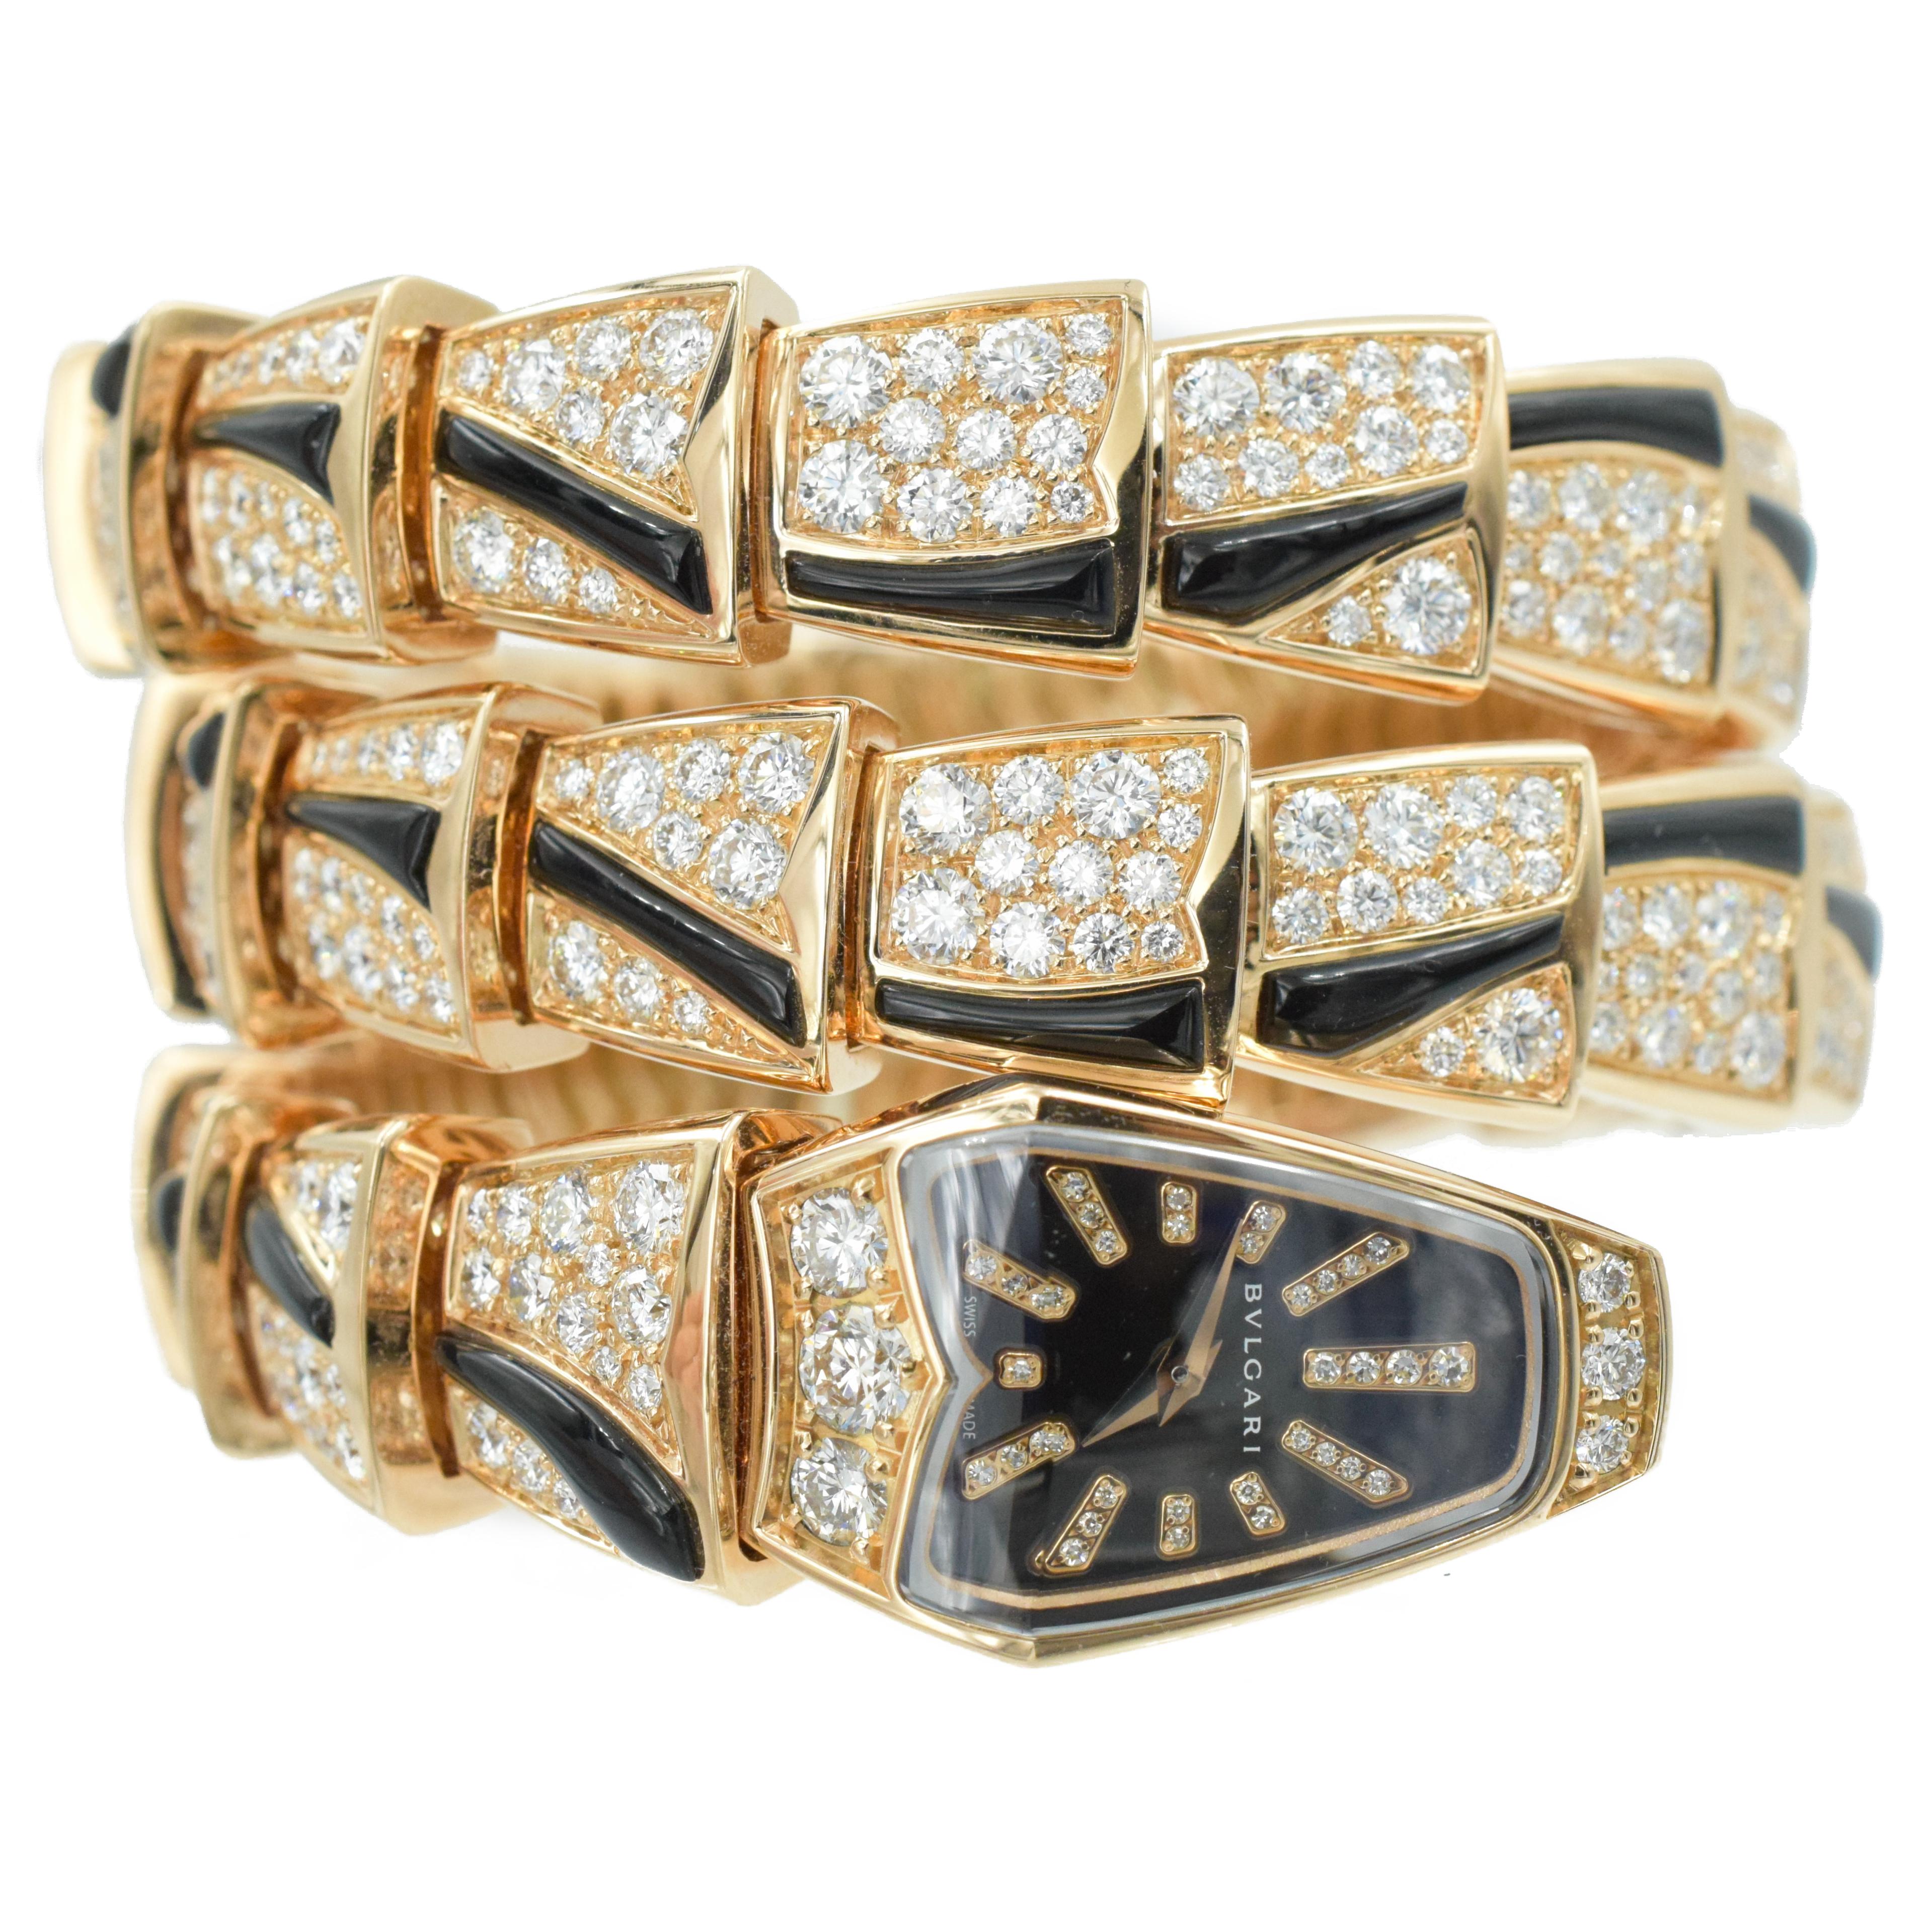 Bulgari Diamant und Onyx 'Serpenti' Spule Armbanduhr in 18k Rose Gold. Die Uhr hat ein Quarzwerk
Bewegung. Hergestellt aus 18 Karat Roségold. Besetzt mit 458 runden Diamanten im Brillantschliff mit einem Gesamtgewicht von
etwa 12,60ct, 
Signiert